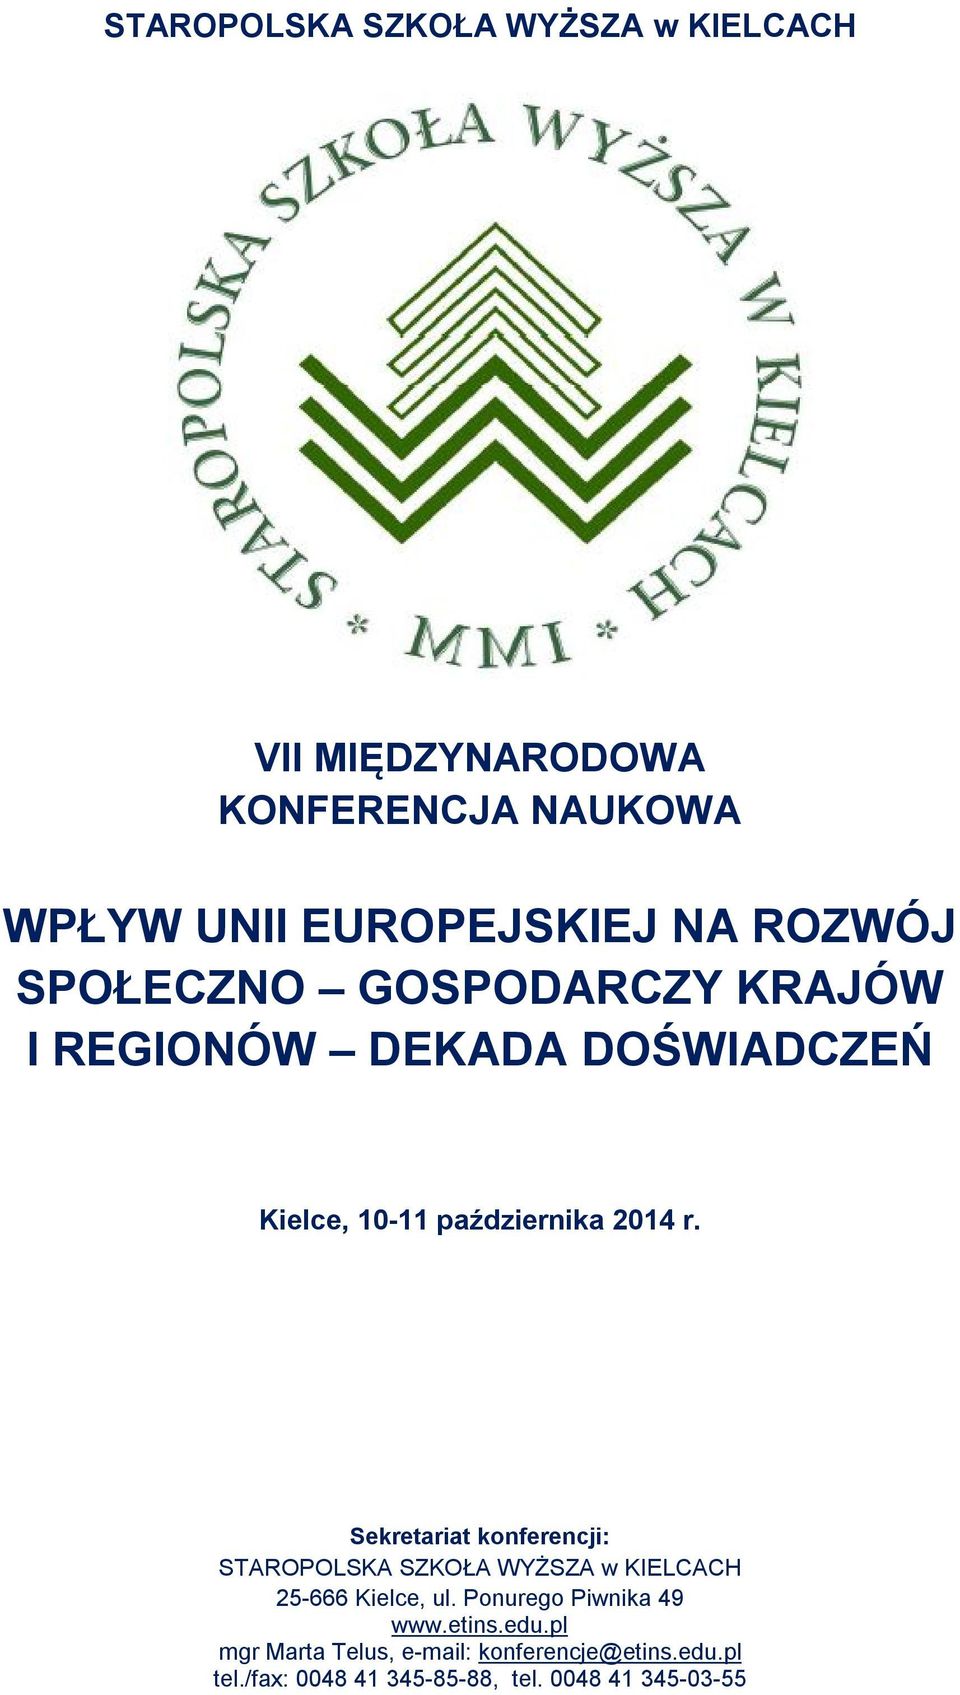 Sekretariat konferencji: STAROPOLSKA SZKOŁA WYŻSZA w KIELCACH 25-666 Kielce, ul. Ponurego Piwnika 49 www.